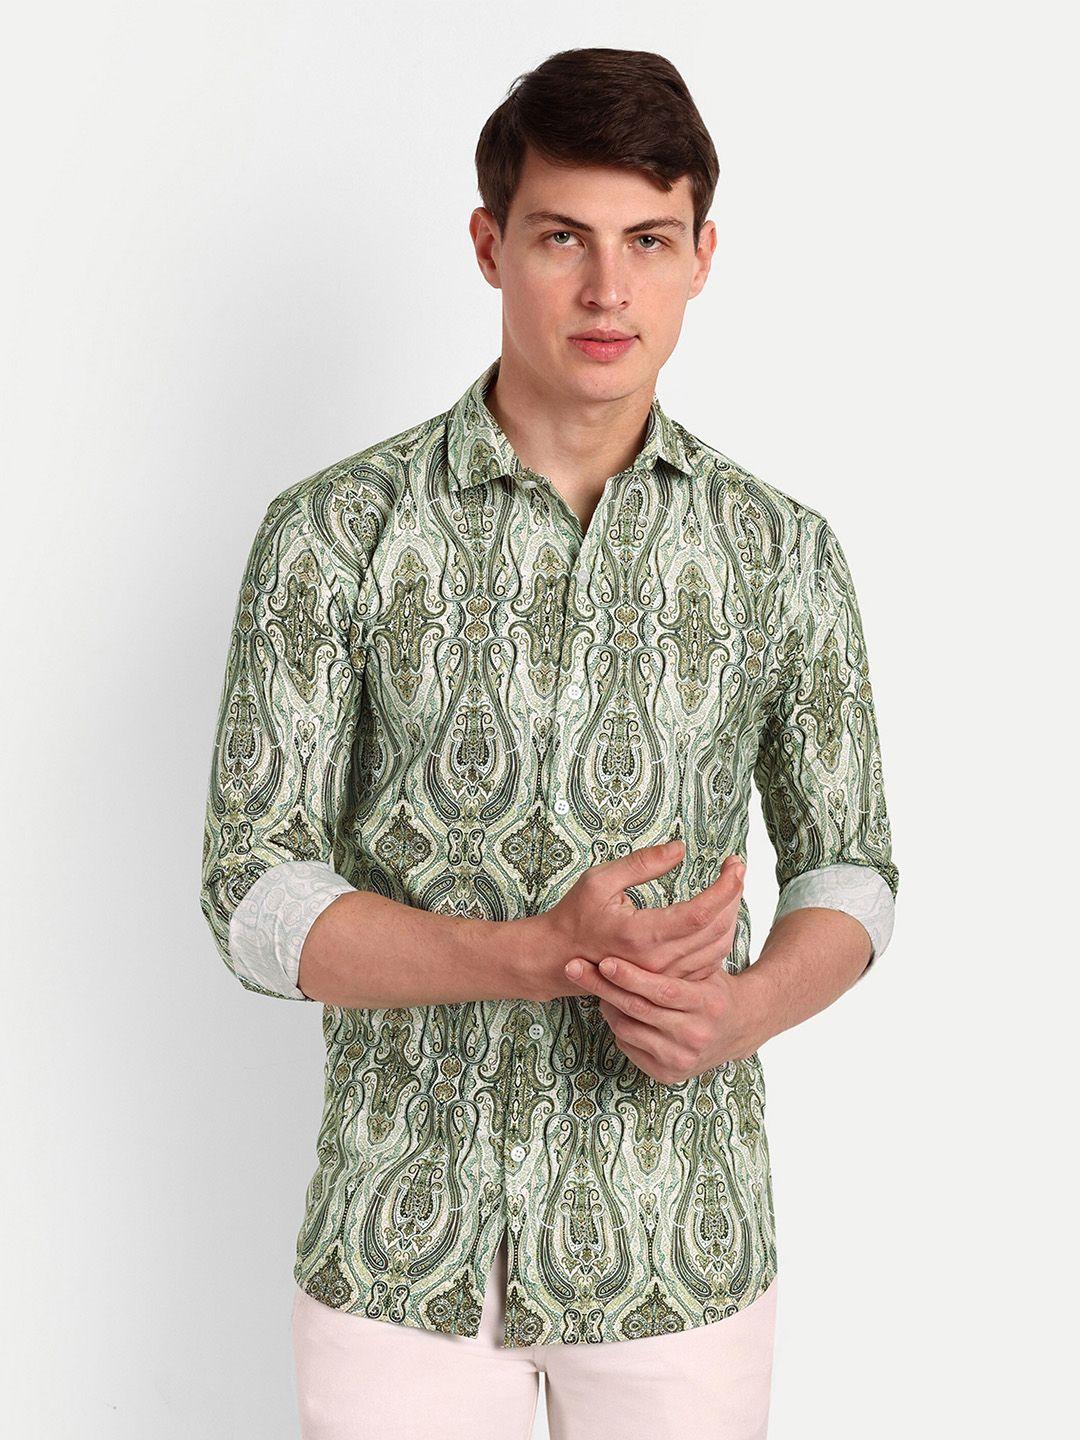 colorwings men green comfort slim fit semi sheer printed party shirt